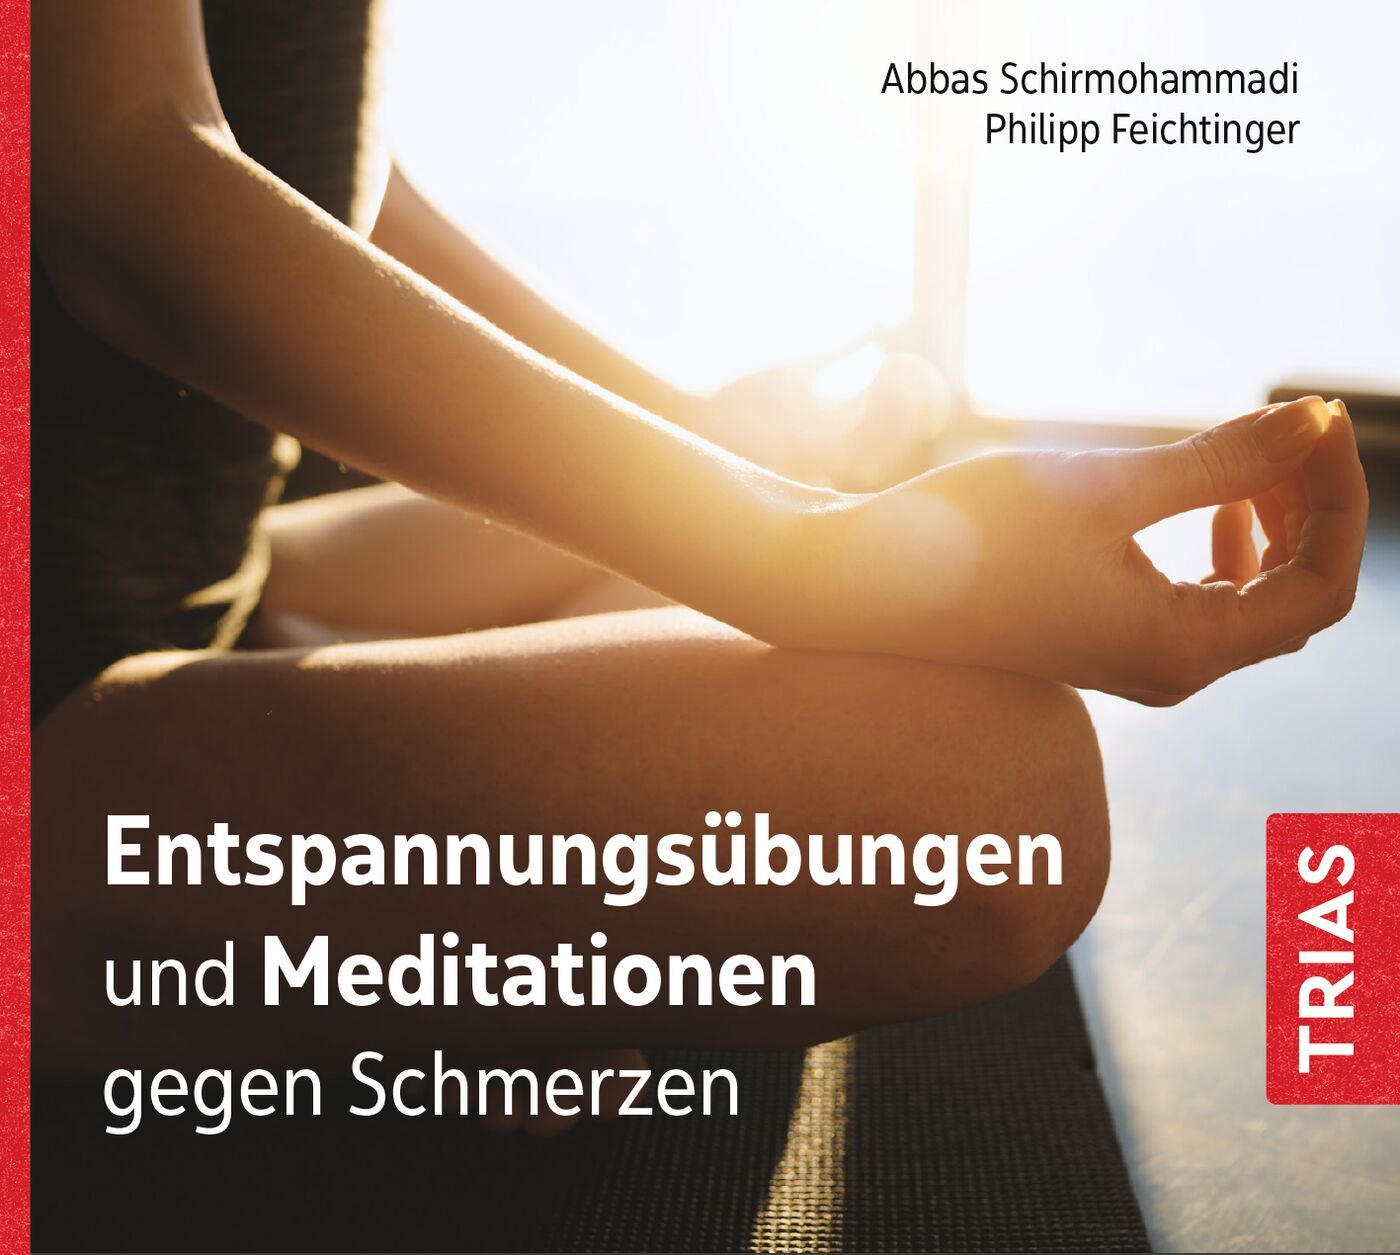 Entspannungsübungen und Meditationen gegen Schmerzen (Audio-CD mit Booklet), 9783432116204